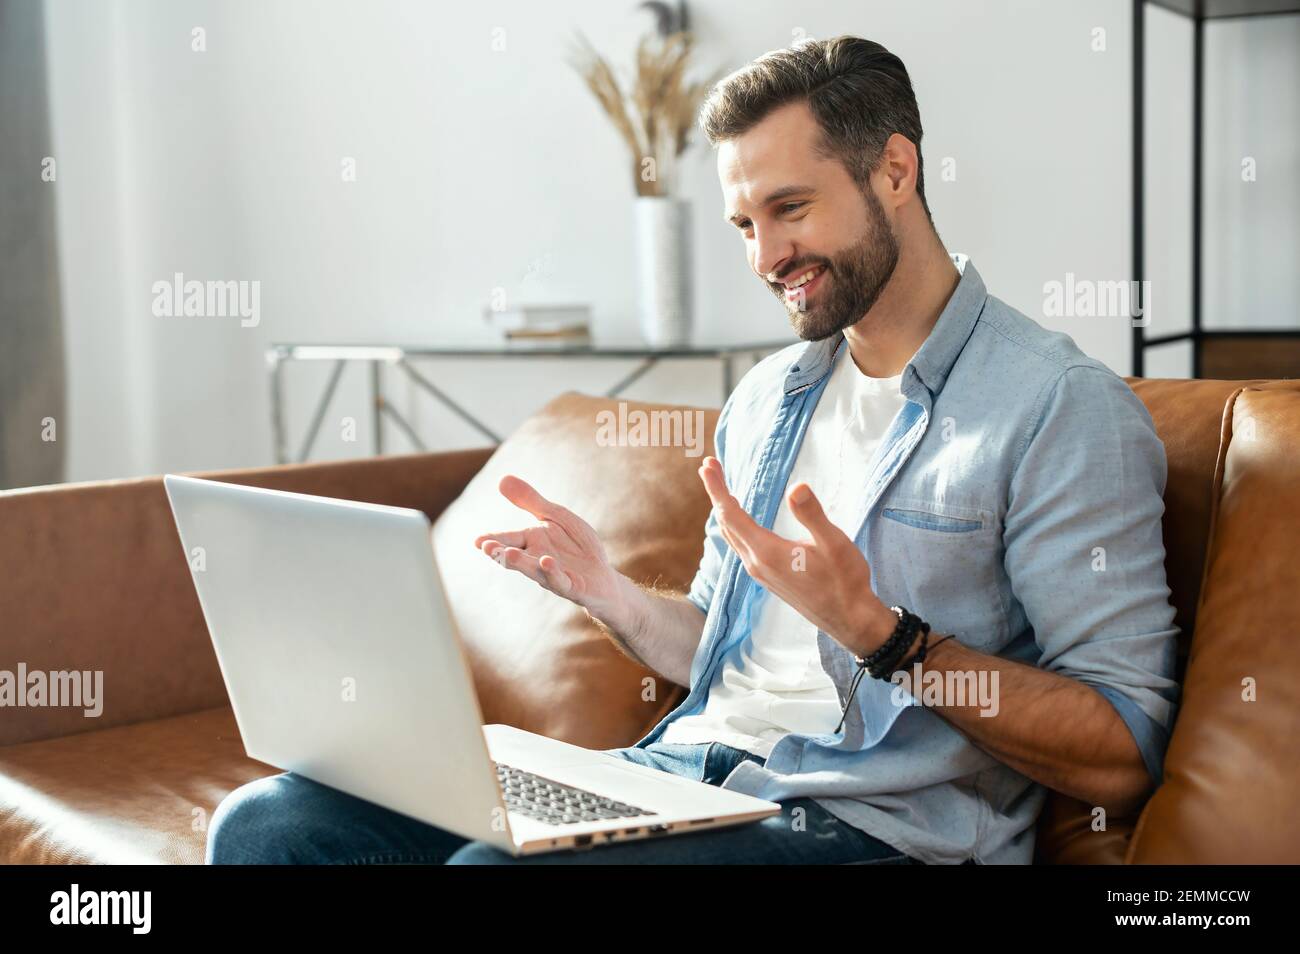 Sorridente giovane uomo hipster sopportato seduto sul divano con il laptop in grembo, flirtare, utilizzando l'app di datazione, videochiamata ragazza online, gesturing e parlare, blogger streaming la sua vita quotidiana Foto Stock